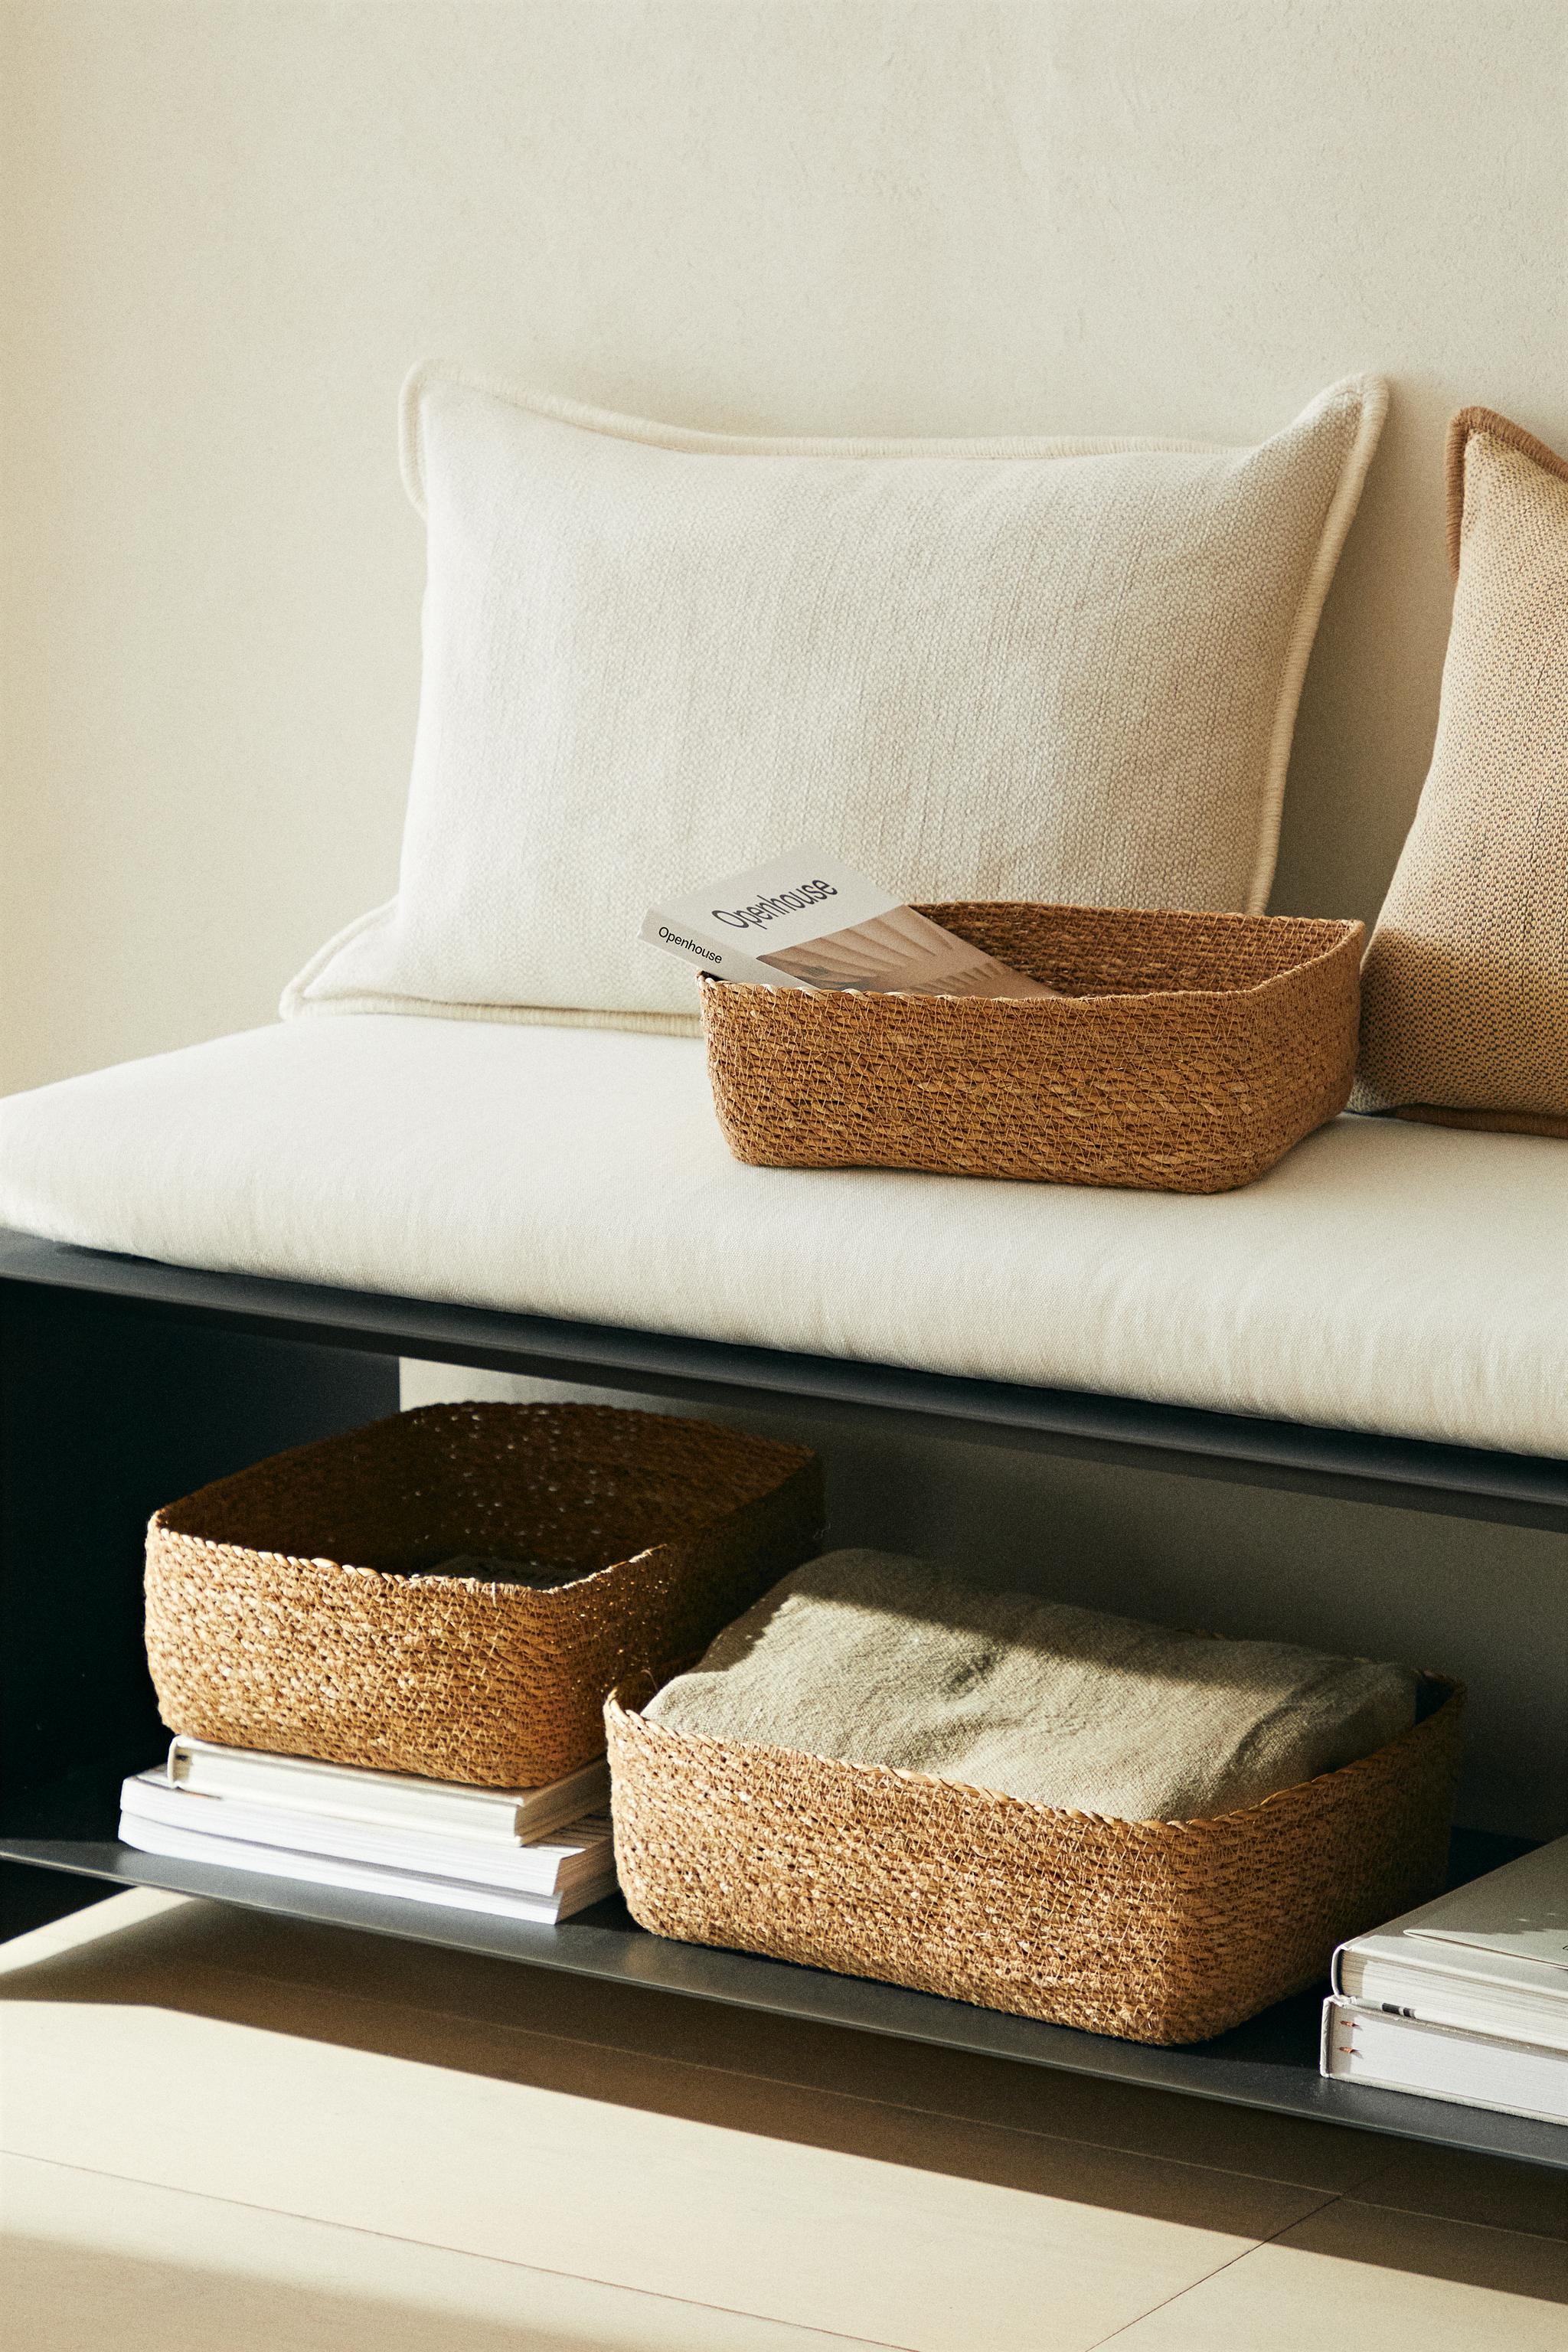 Los Special Price de Zara Home incluyen muchas cestas y cajas (que nunca  sobran) para mantener el orden en casa